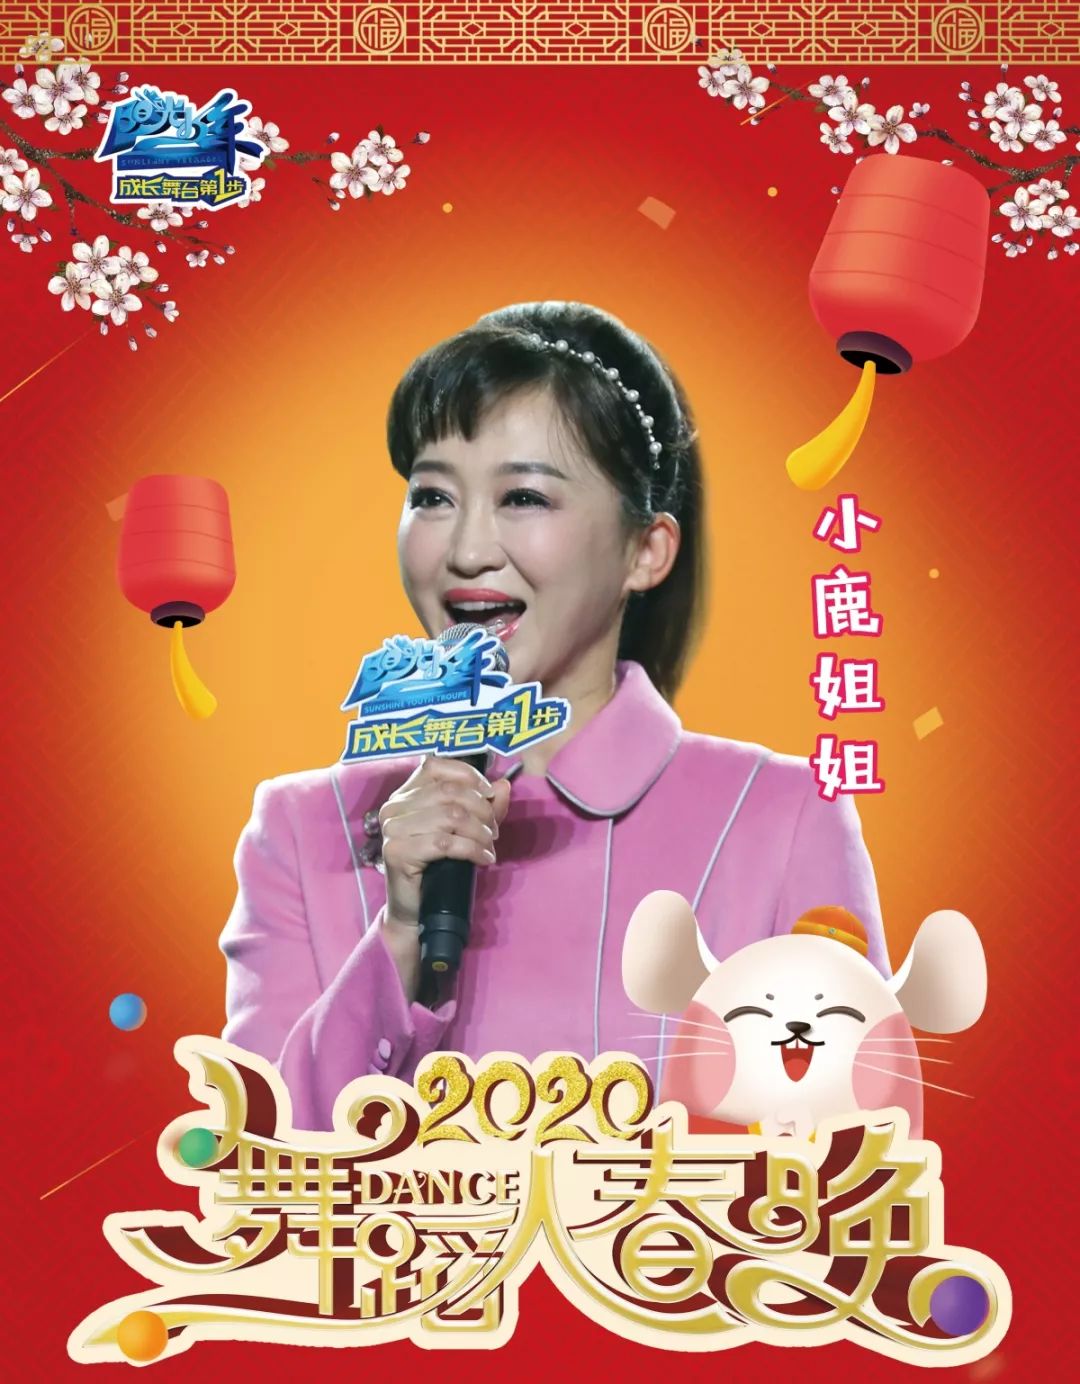 孩子王 小鹿姐姐:央视少儿频道节目主持人;央视少儿频道节目主持人